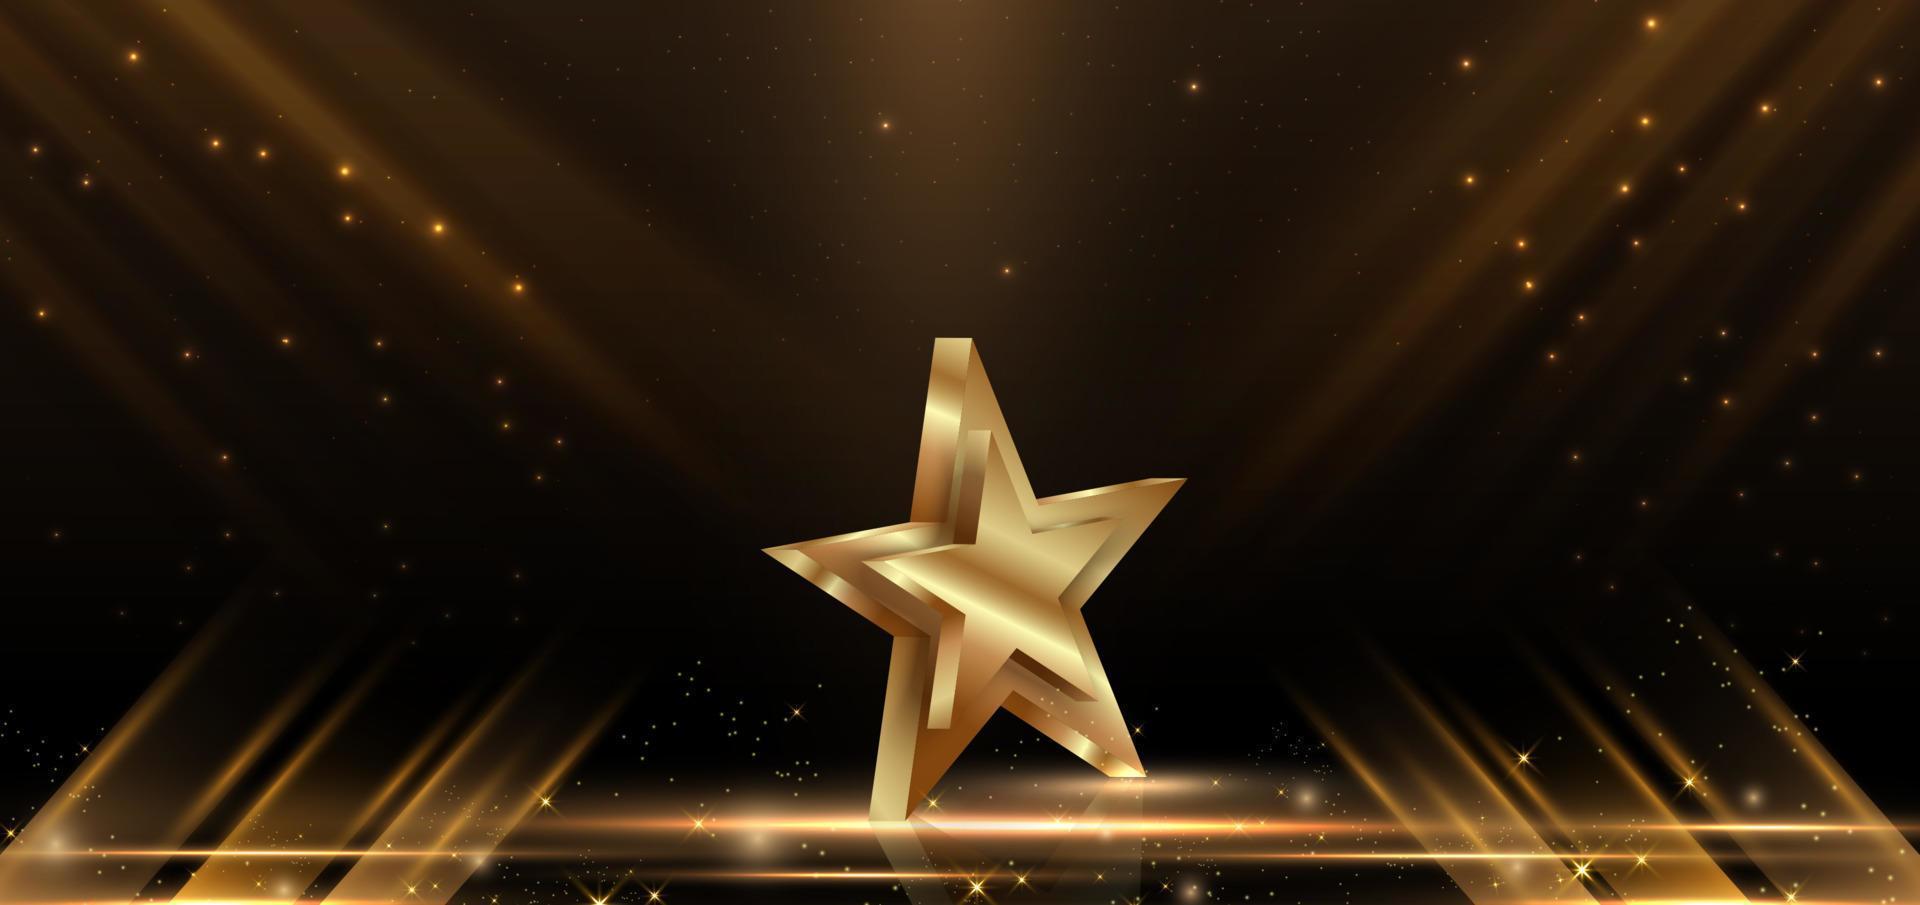 ouro estrela 3d elegante abstrato com brilho de cena diagonal de efeito de iluminação em fundo preto. vetor